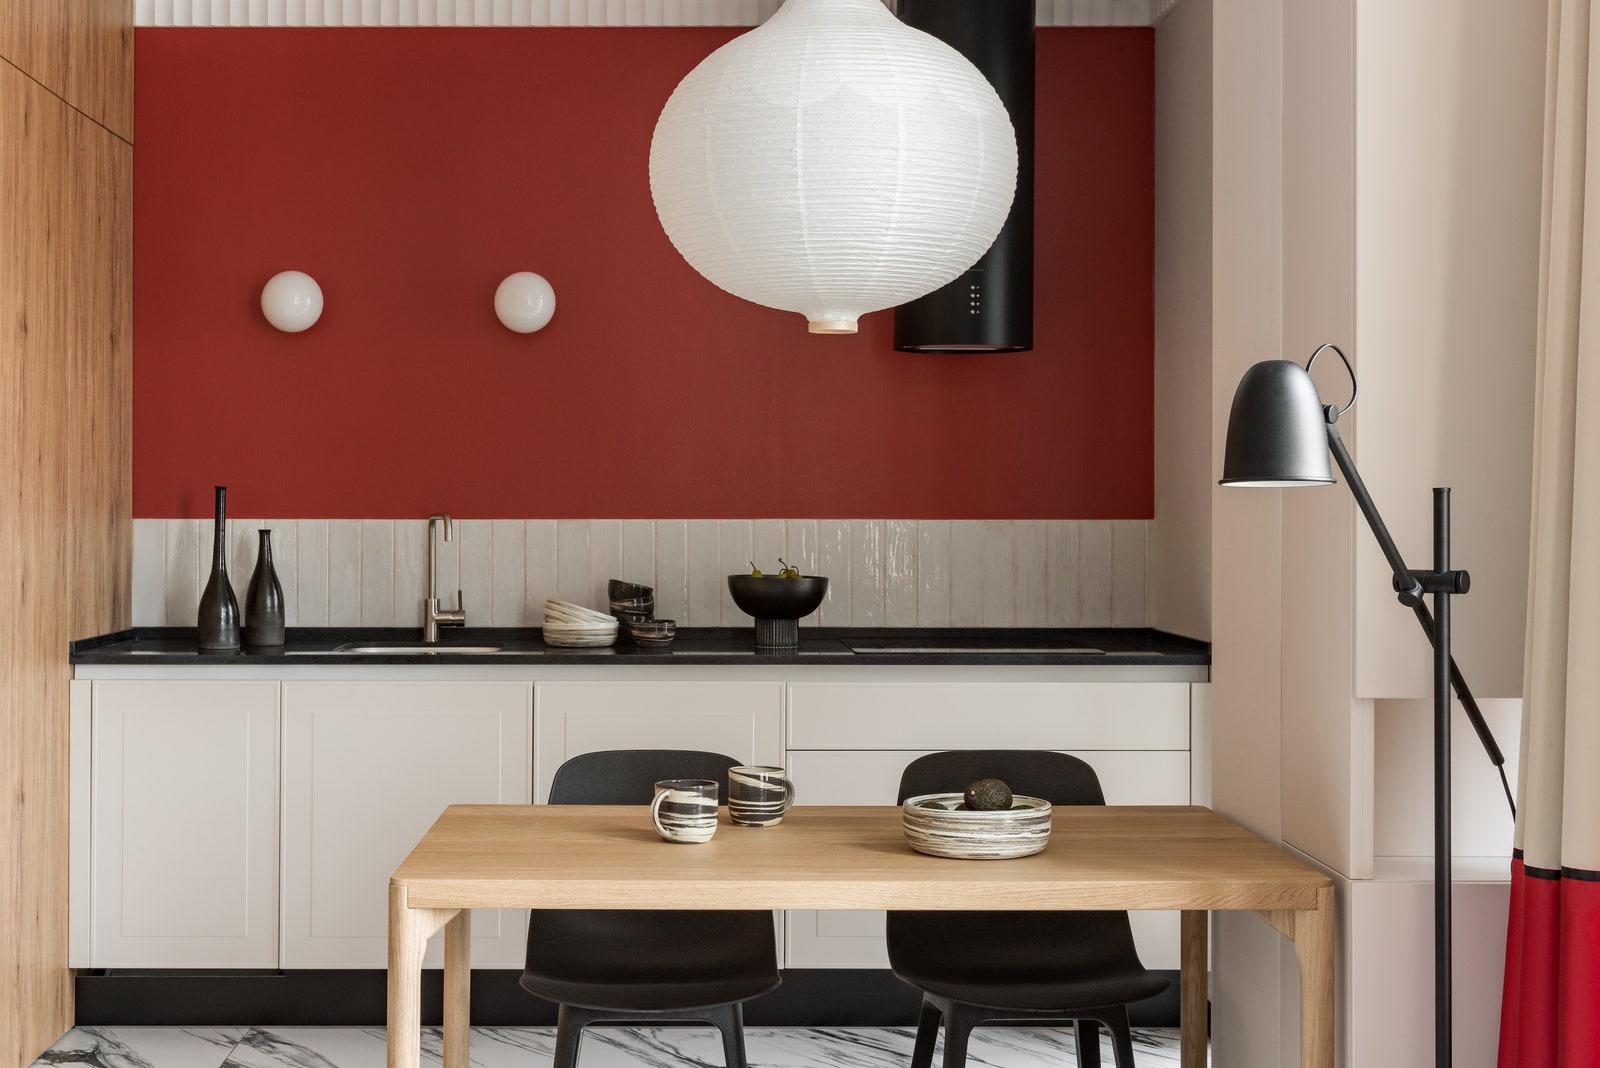 Кухня. Встроенные шкафы и кухня “Баккара” спроектированы специально для этой квартиры плитка на фартуке кухни Kerama...